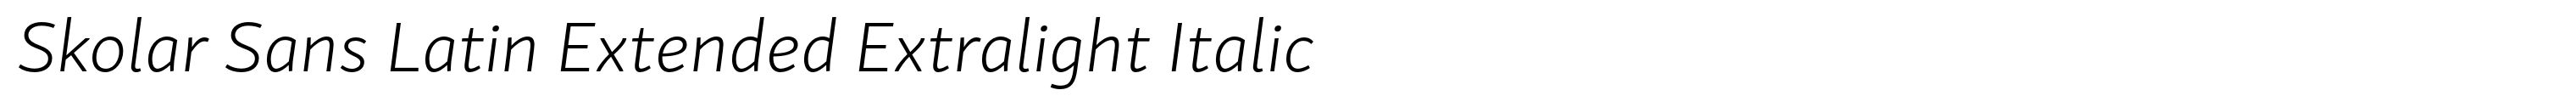 Skolar Sans Latin Extended Extralight Italic